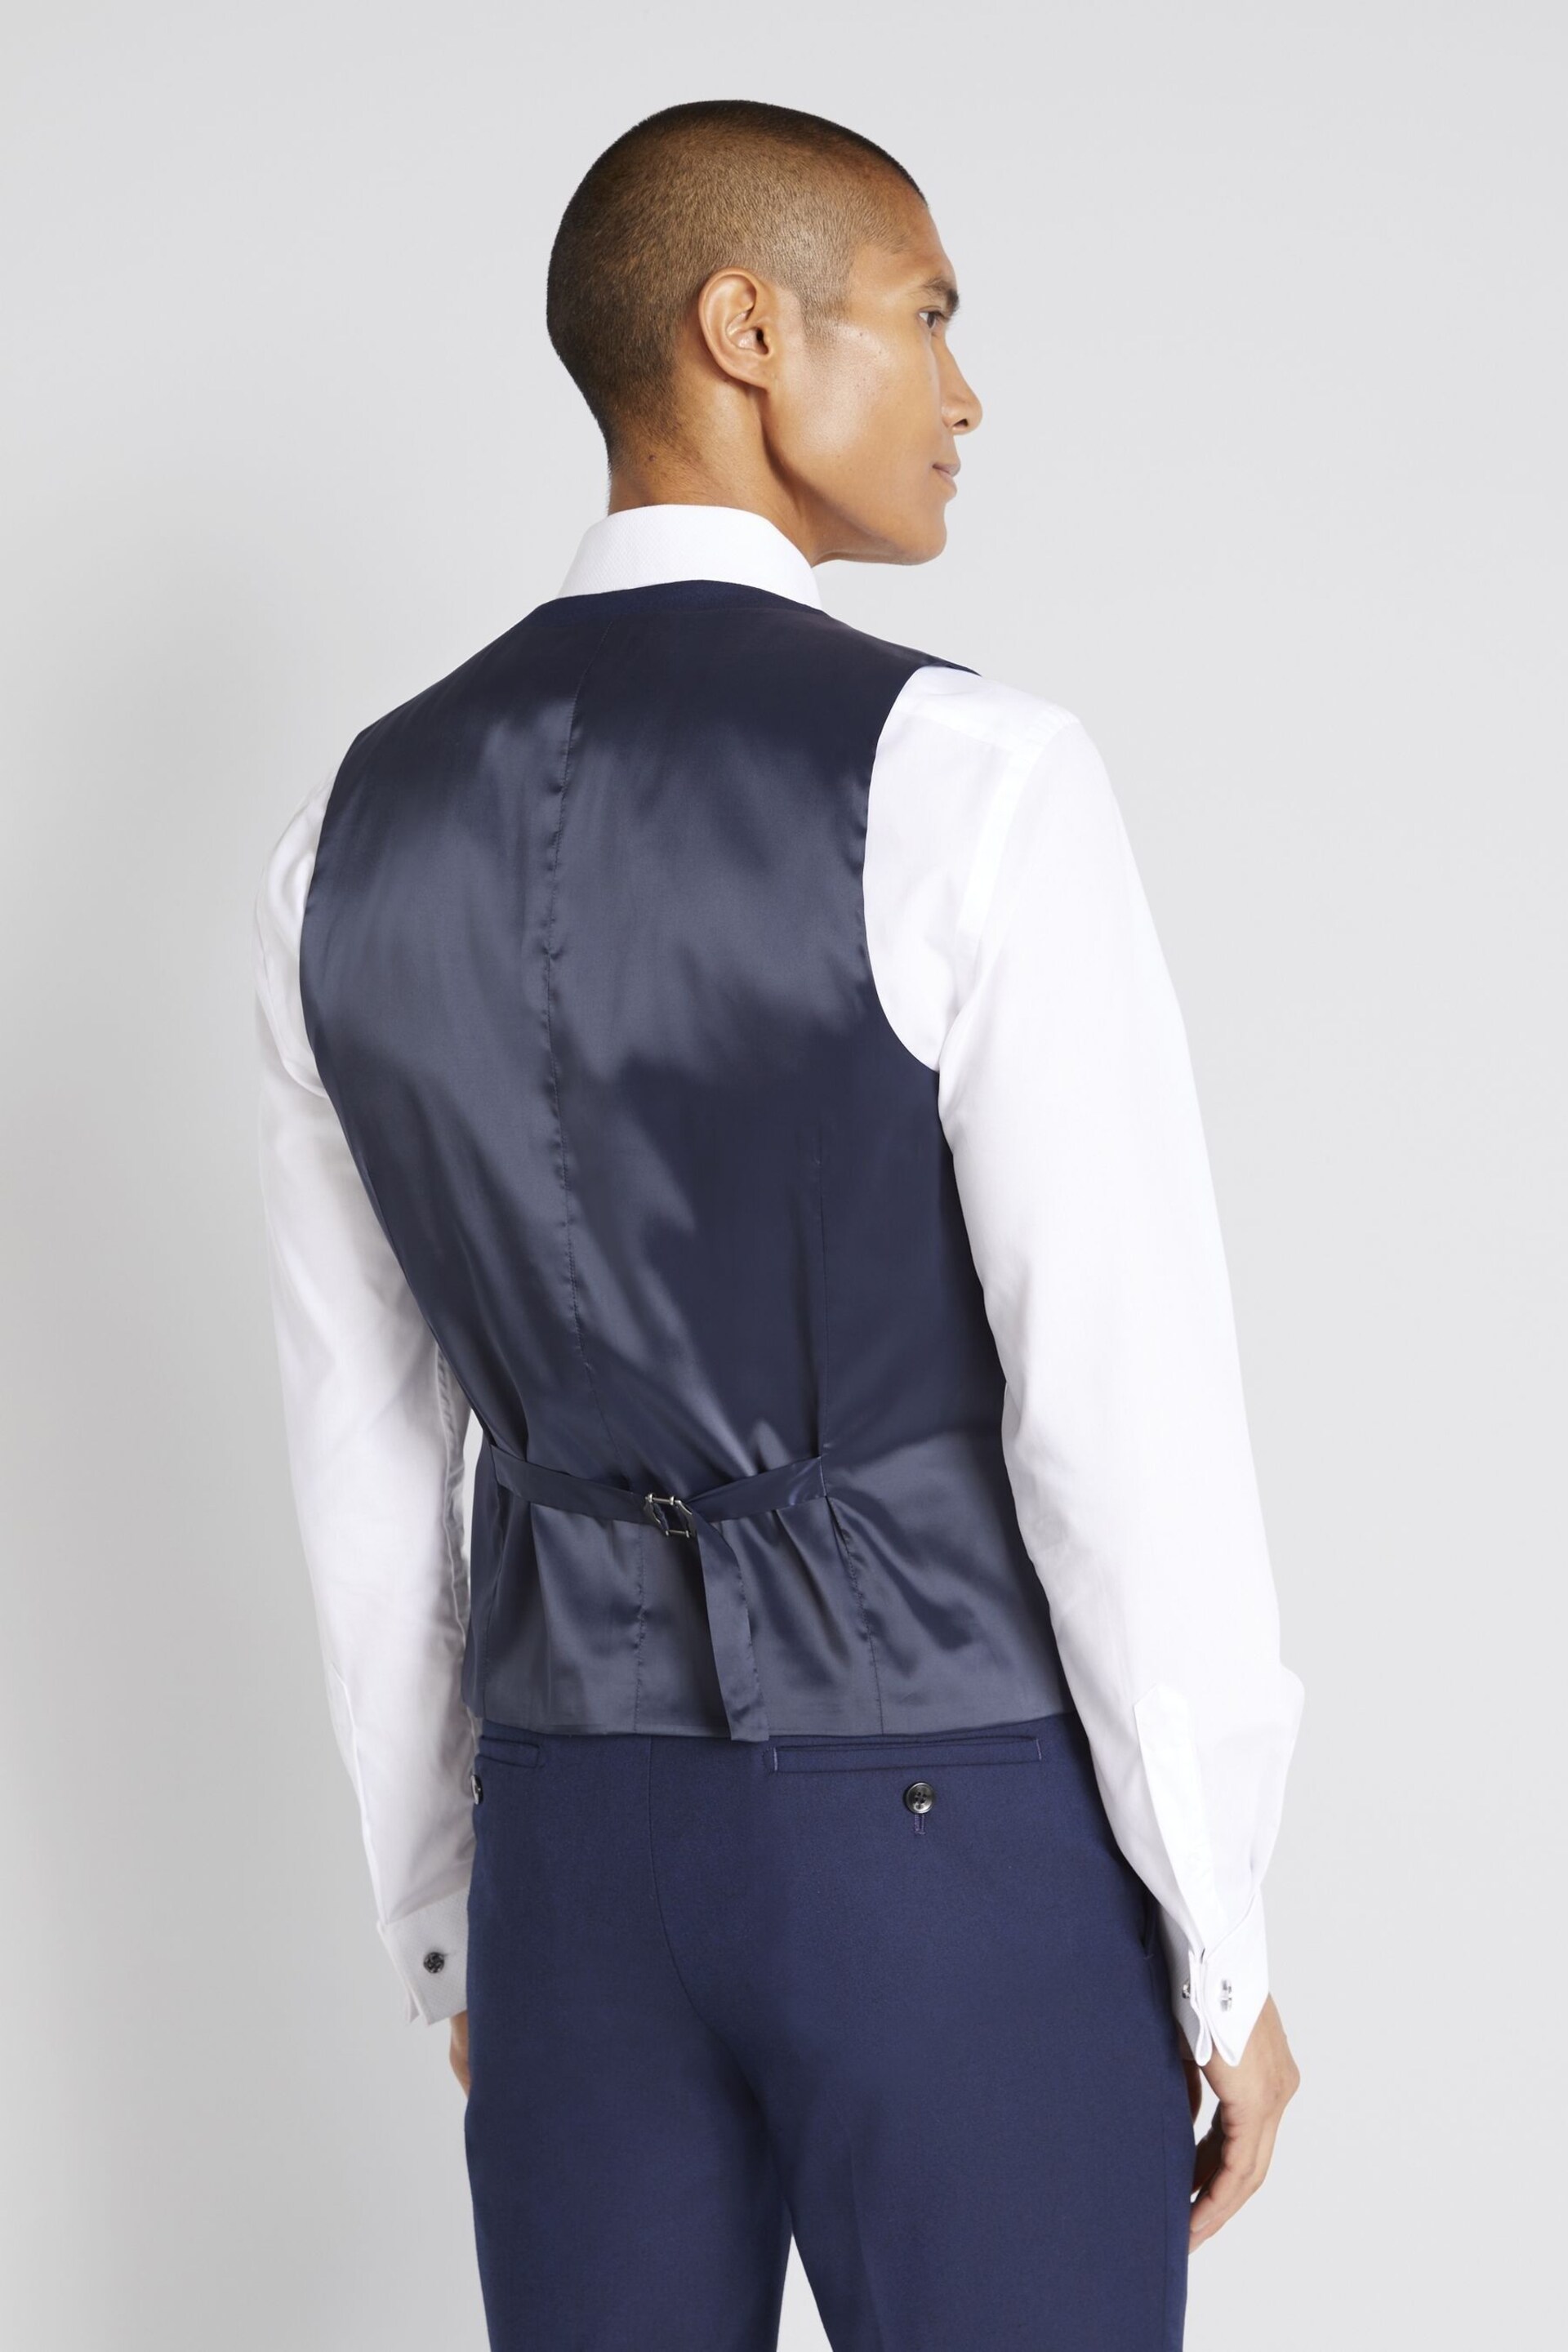 MOSS Blue Slim Fit Dresswear Suit: Waistcoat - Image 2 of 3